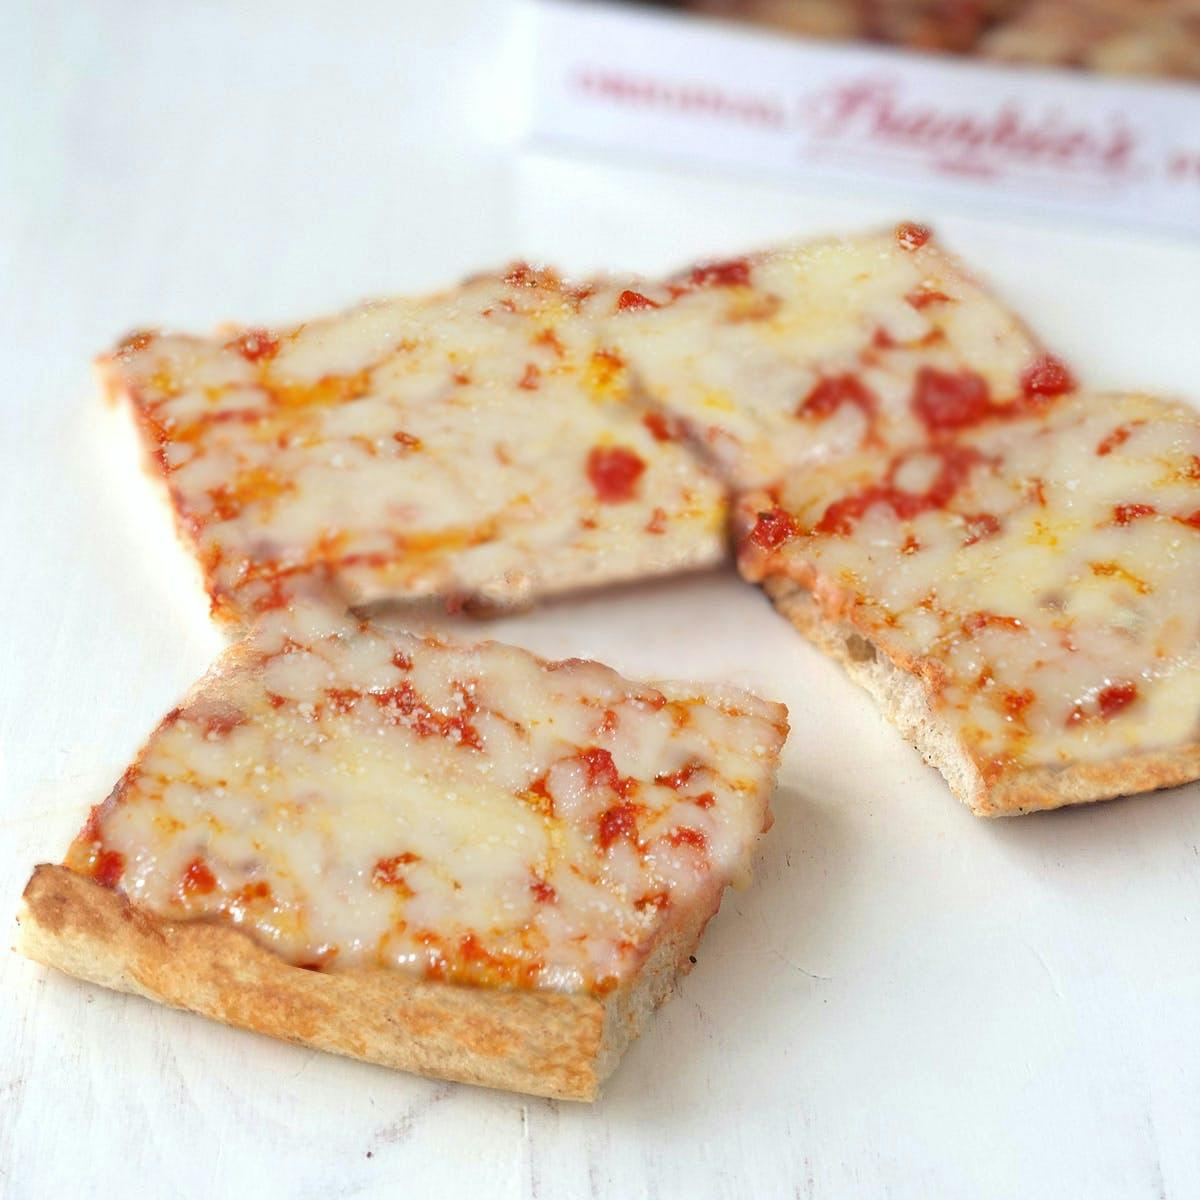 square cheese pizza slice